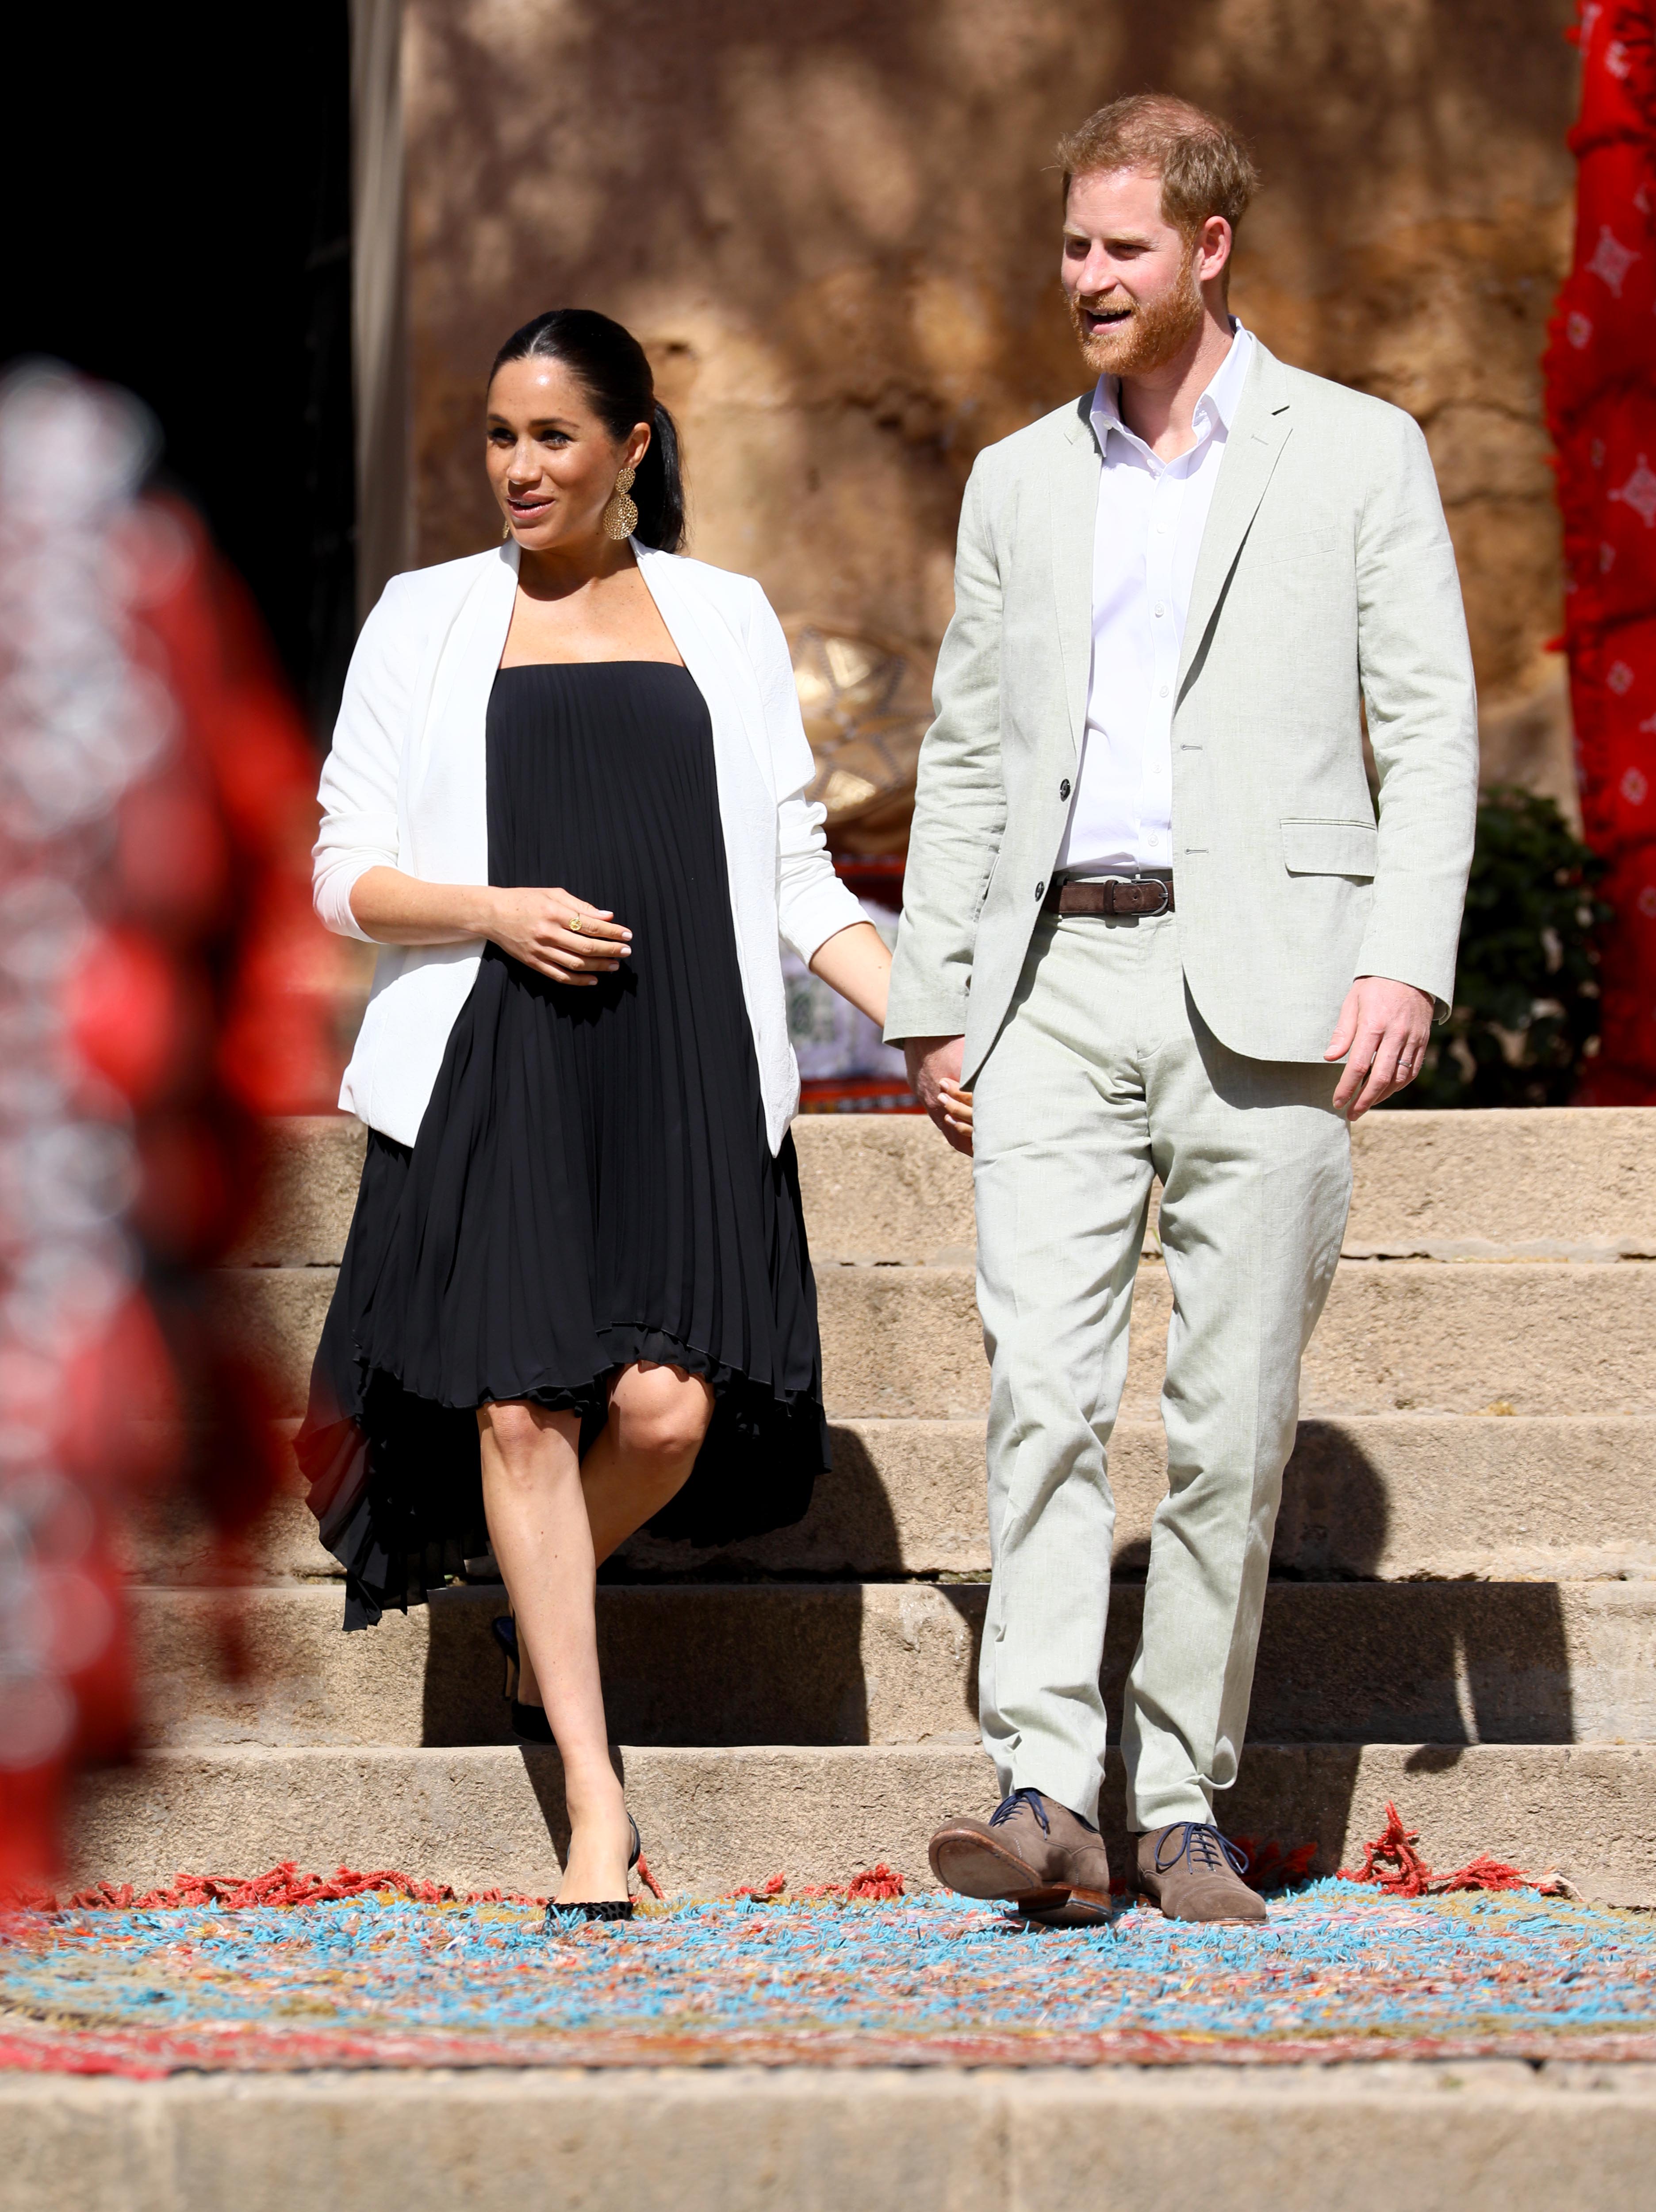 El príncipe Harry y Meghan Markle caminando por los jardines públicos amurallados de Andalucía durante una visita, el 25 de febrero de 2019 en Rabat, Marruecos. | Foto: Getty Images